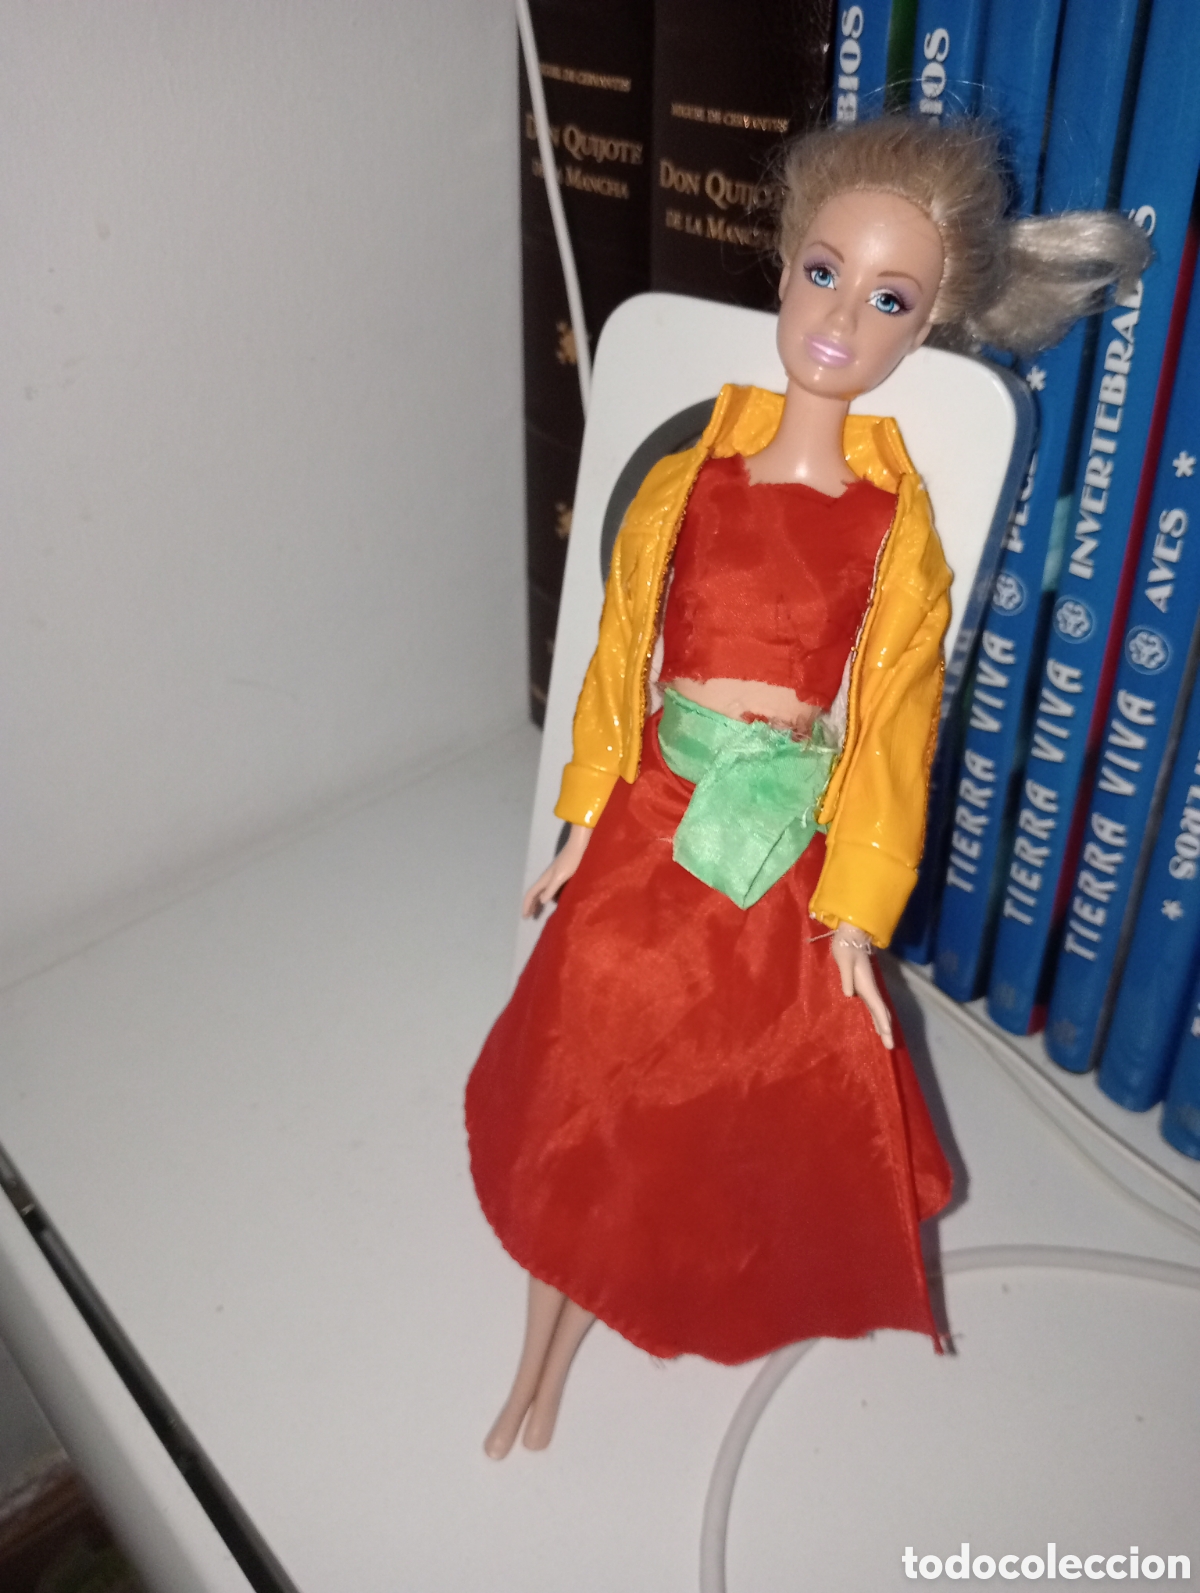 sombrero barbie western stampin 10340-1993 - Acquista Vestiti e accessori  di bambola Barbie e Ken su todocoleccion